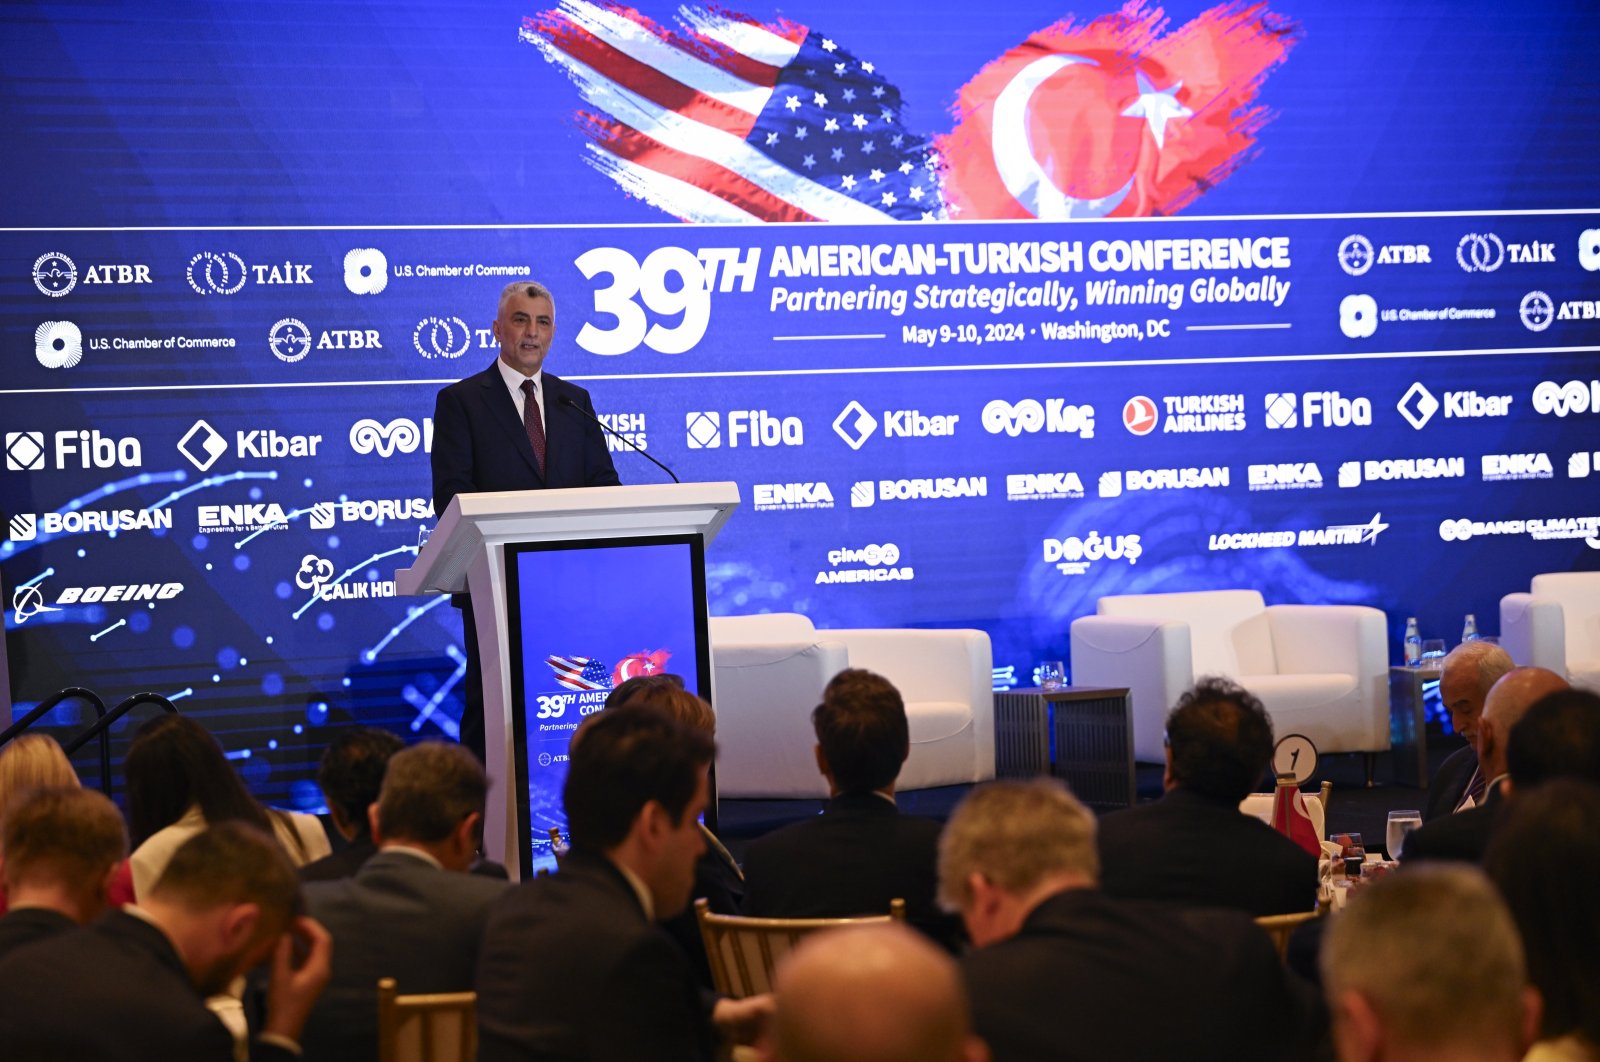 Yetkililer diyaloğu teşvik ediyor ve Türkiye ile ABD arasındaki ekonomik bağların güçlendirilmesini istiyor